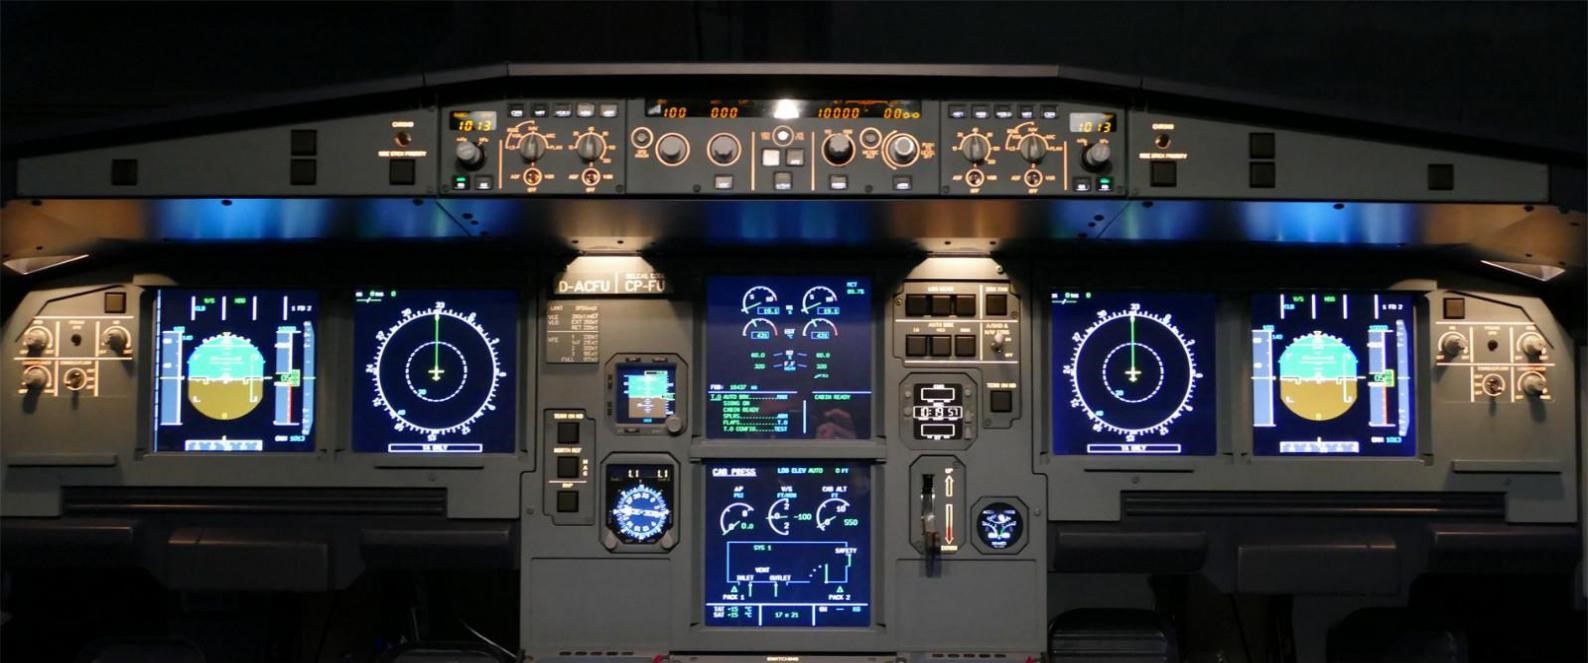 飞行者联盟空客A320模拟舱 整舱产品发布！-9559 